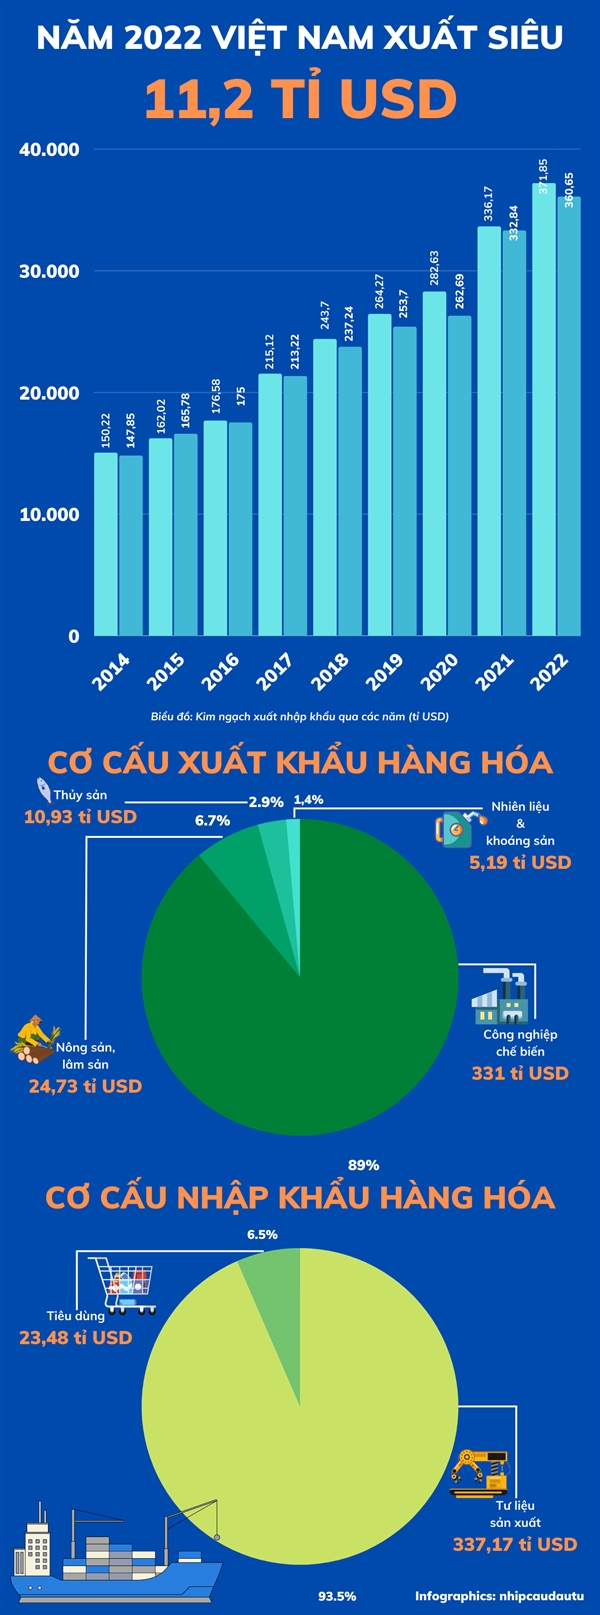 Viet Nam xuat sieu 11,2 ti USD trong nam 2022